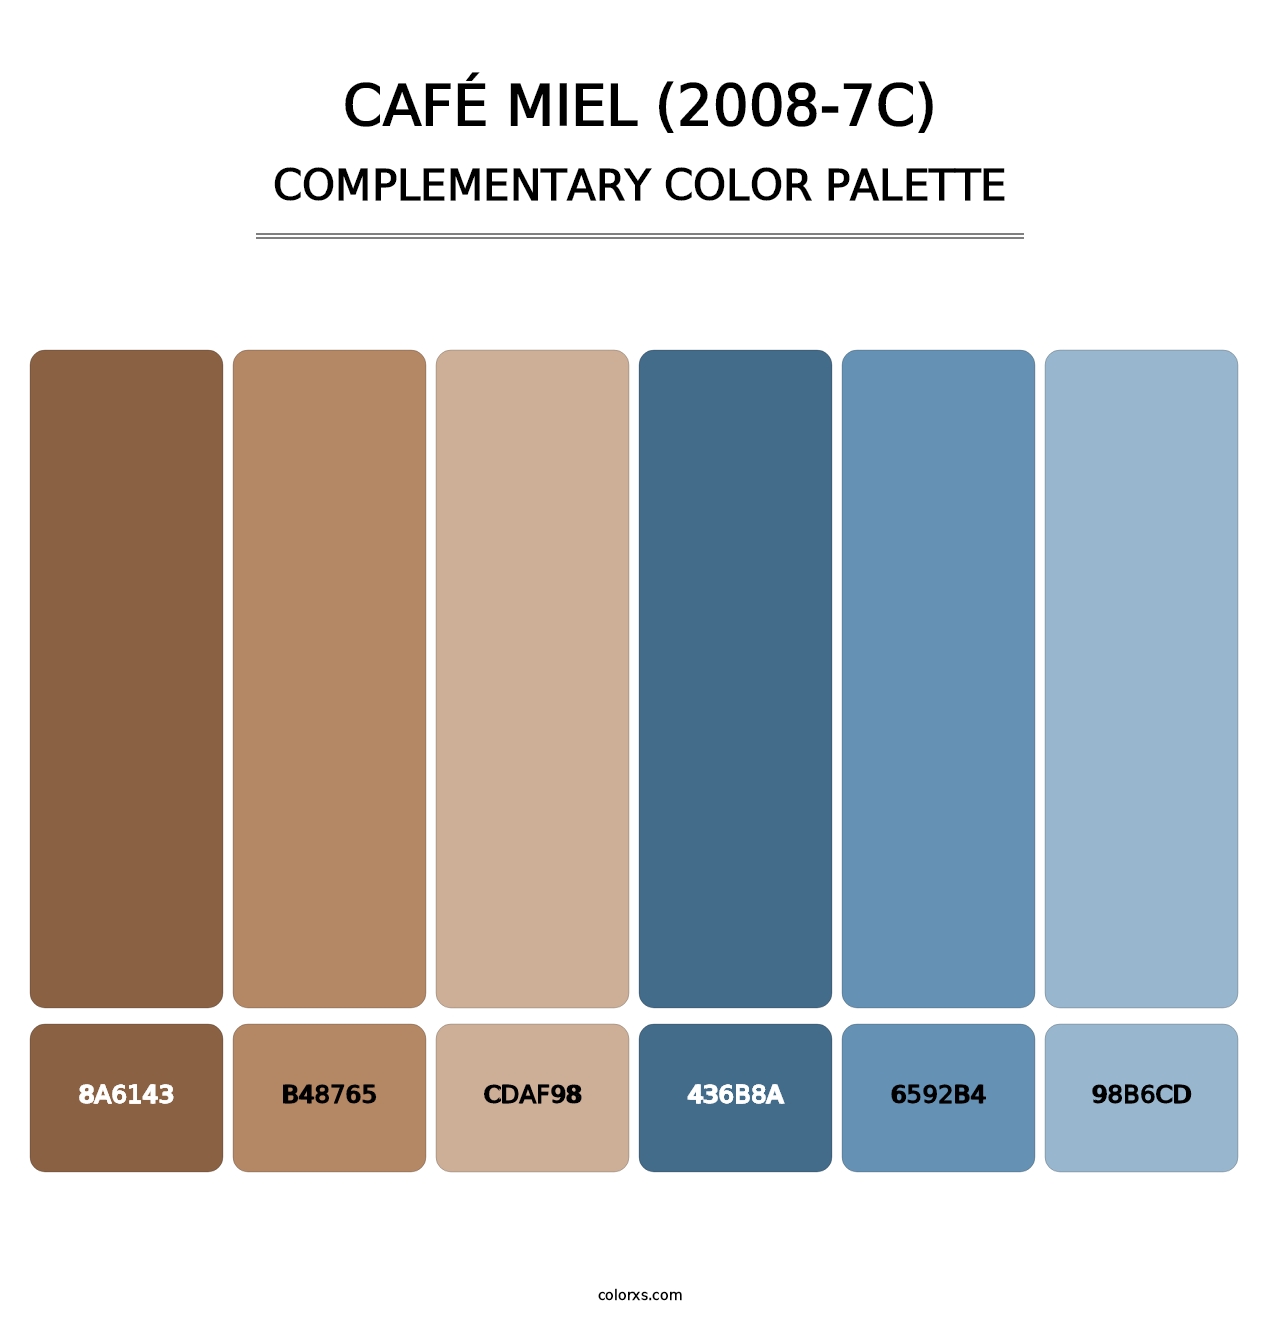 Café Miel (2008-7C) - Complementary Color Palette